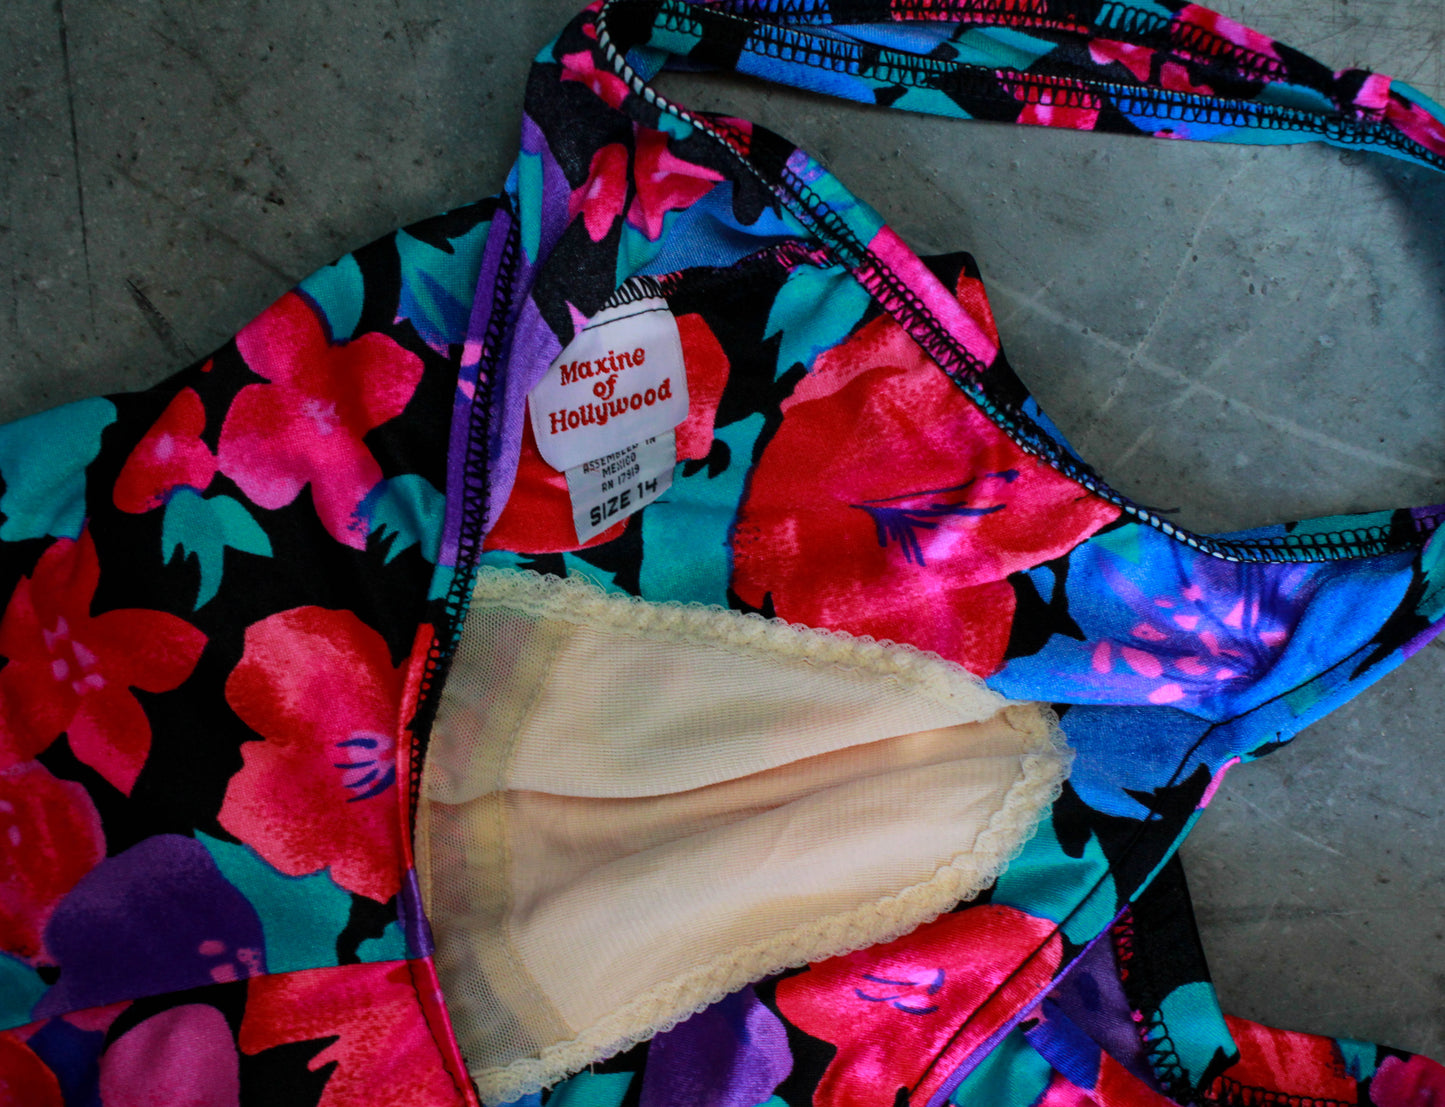 Women's Vintage 80's Floral Bathing Suit One-Piece Swimware Large 